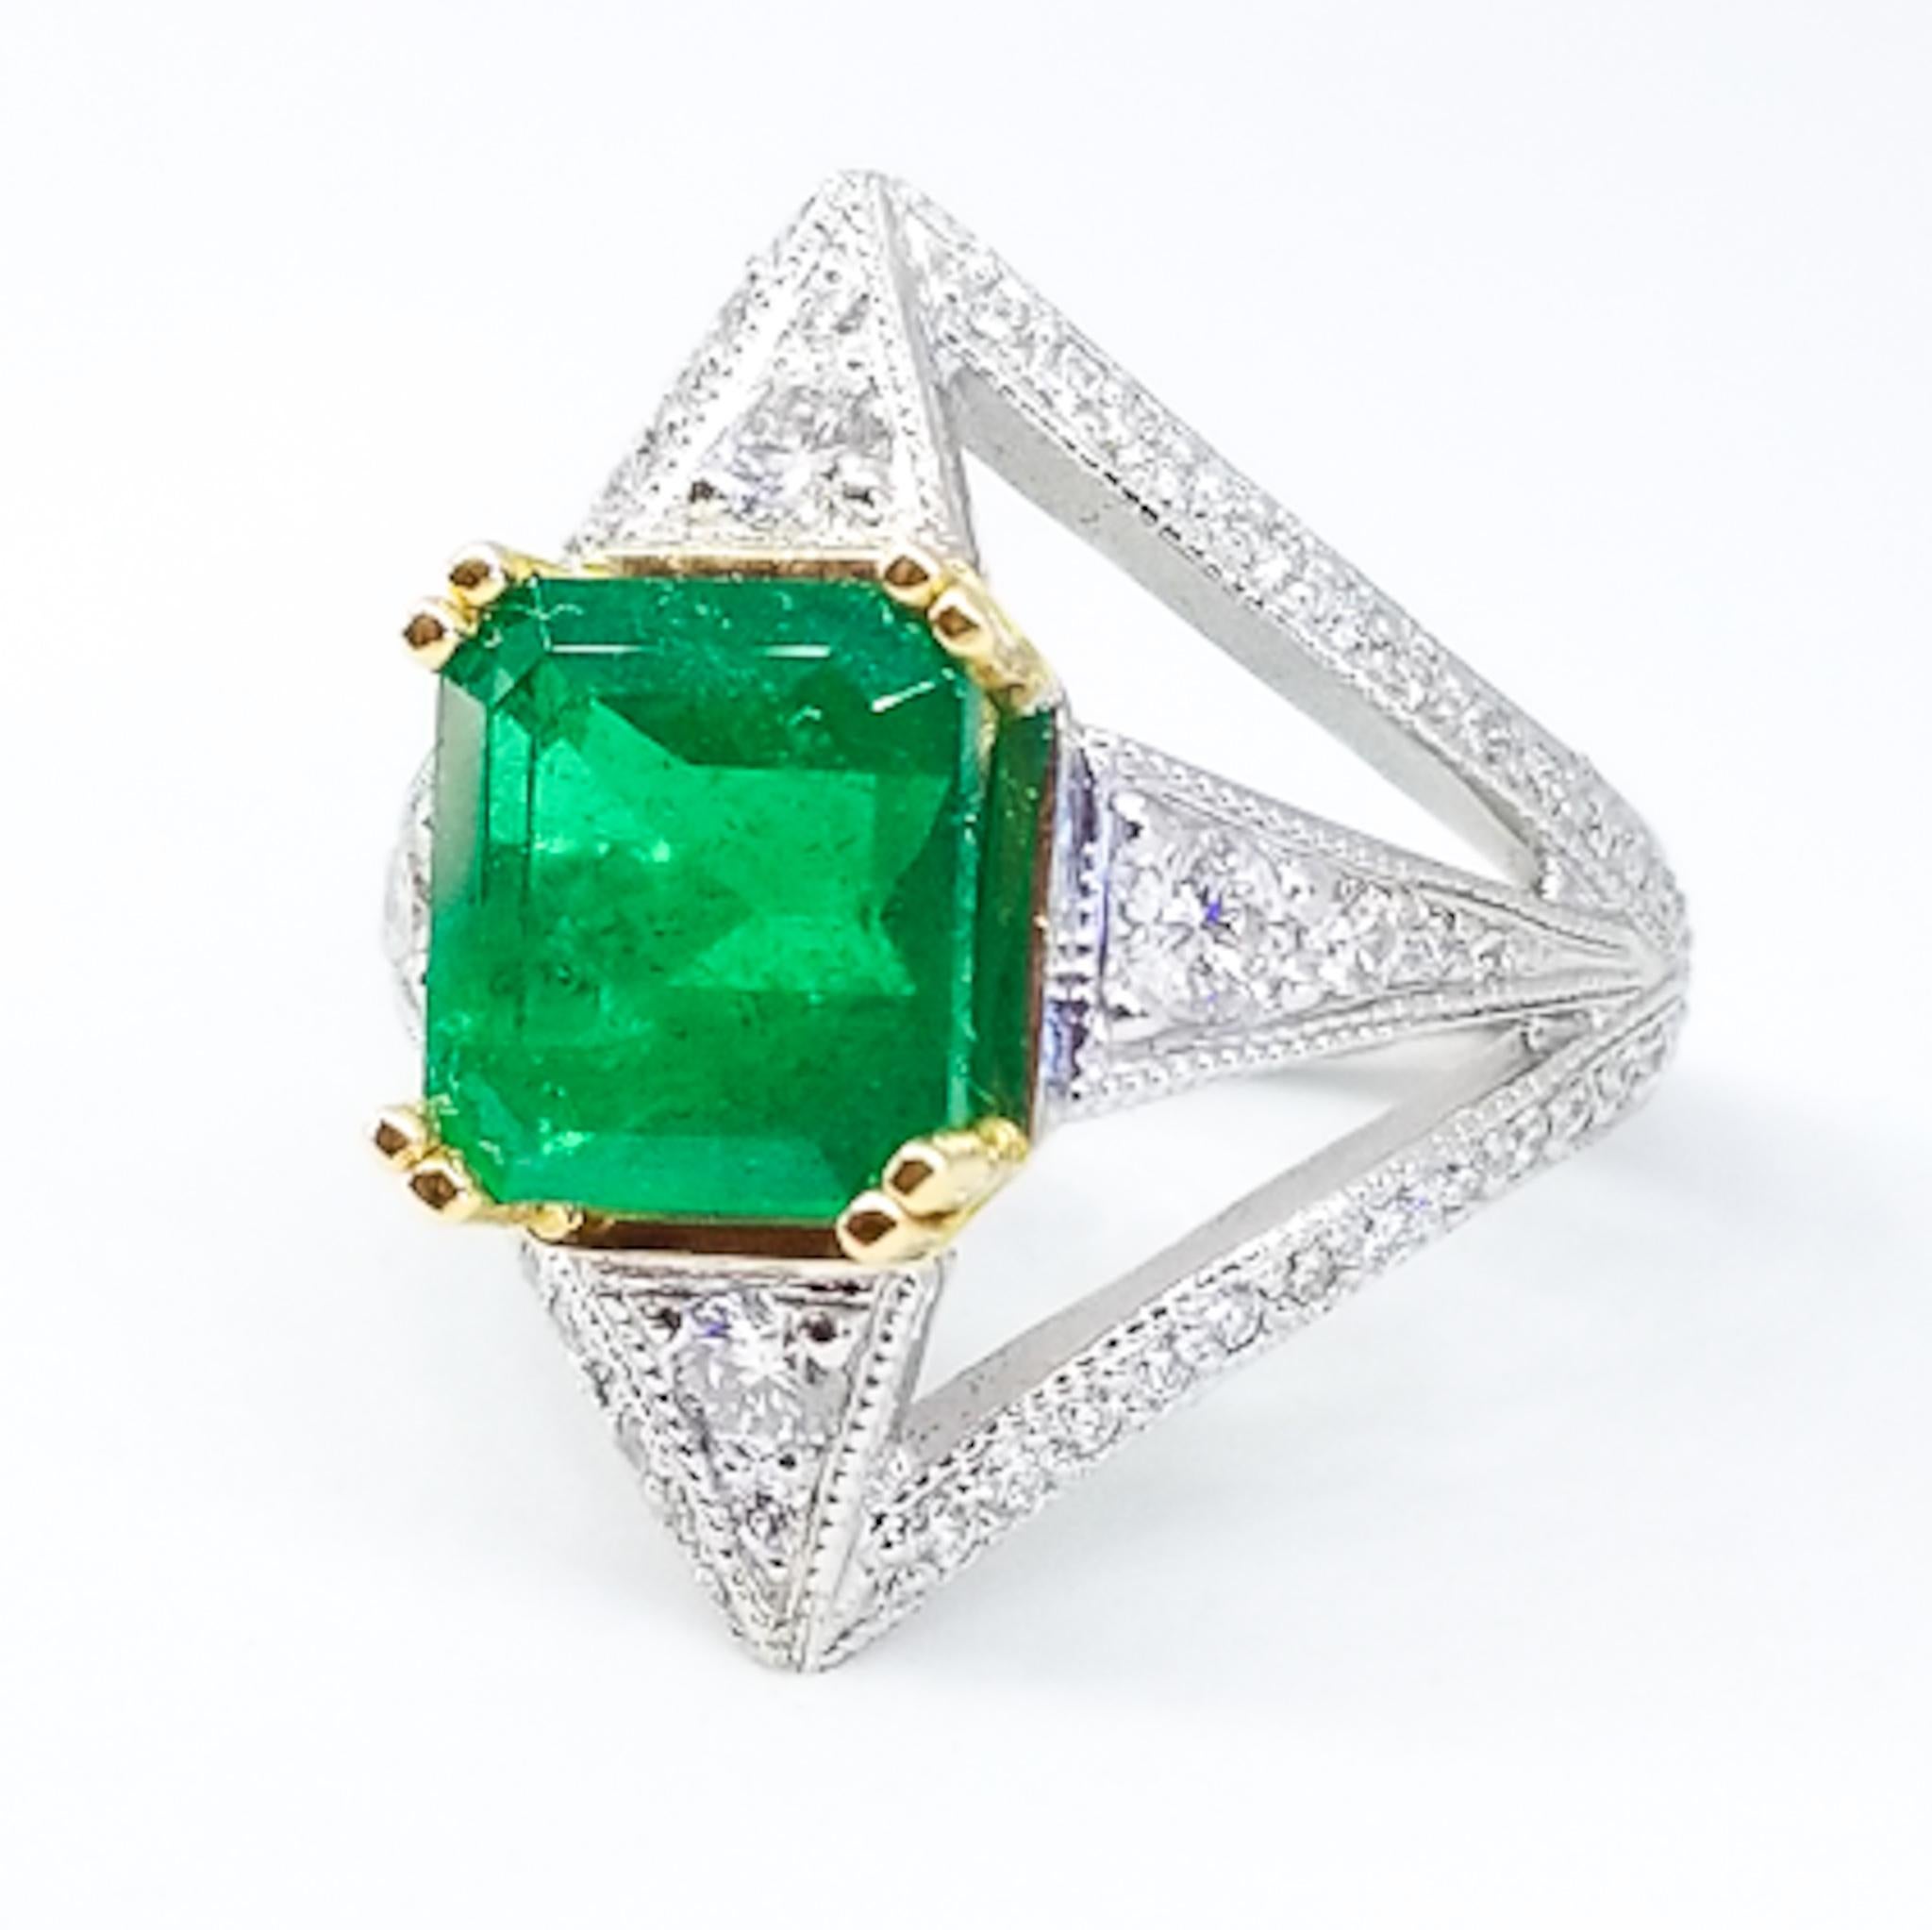 Dieser individuell gestaltete, einzigartige Statement-Ring von Tom Castor enthält einen sehr feinen kolumbianischen Smaragd von 3,26 Karat. Der Stein mit quadratischem Schliff ist von satter grasgrüner Farbe und außergewöhnlicher Reinheit. Der Ring